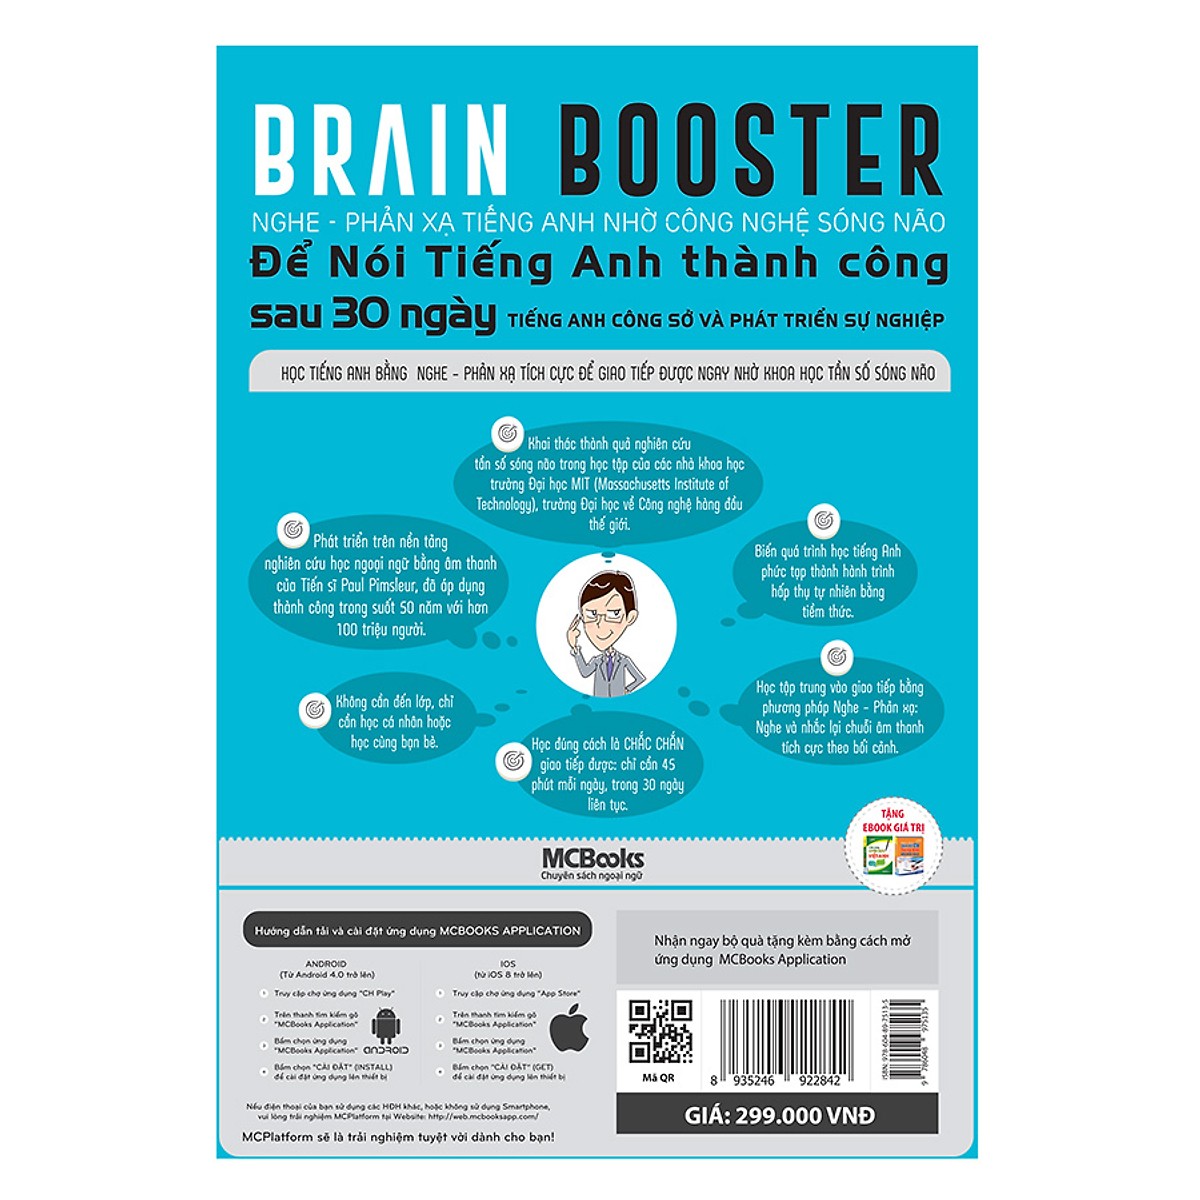 Brain Booster - Nghe Phản Xạ Tiếng Anh Nhờ Công Nghệ Sóng Não Để Nói Tiếng Anh Thành Công Sau 30 Ngày - Tiếng Anh Công Sở Và Phát Triển Sự Nghiệp (Tặng kèm Booksmark)